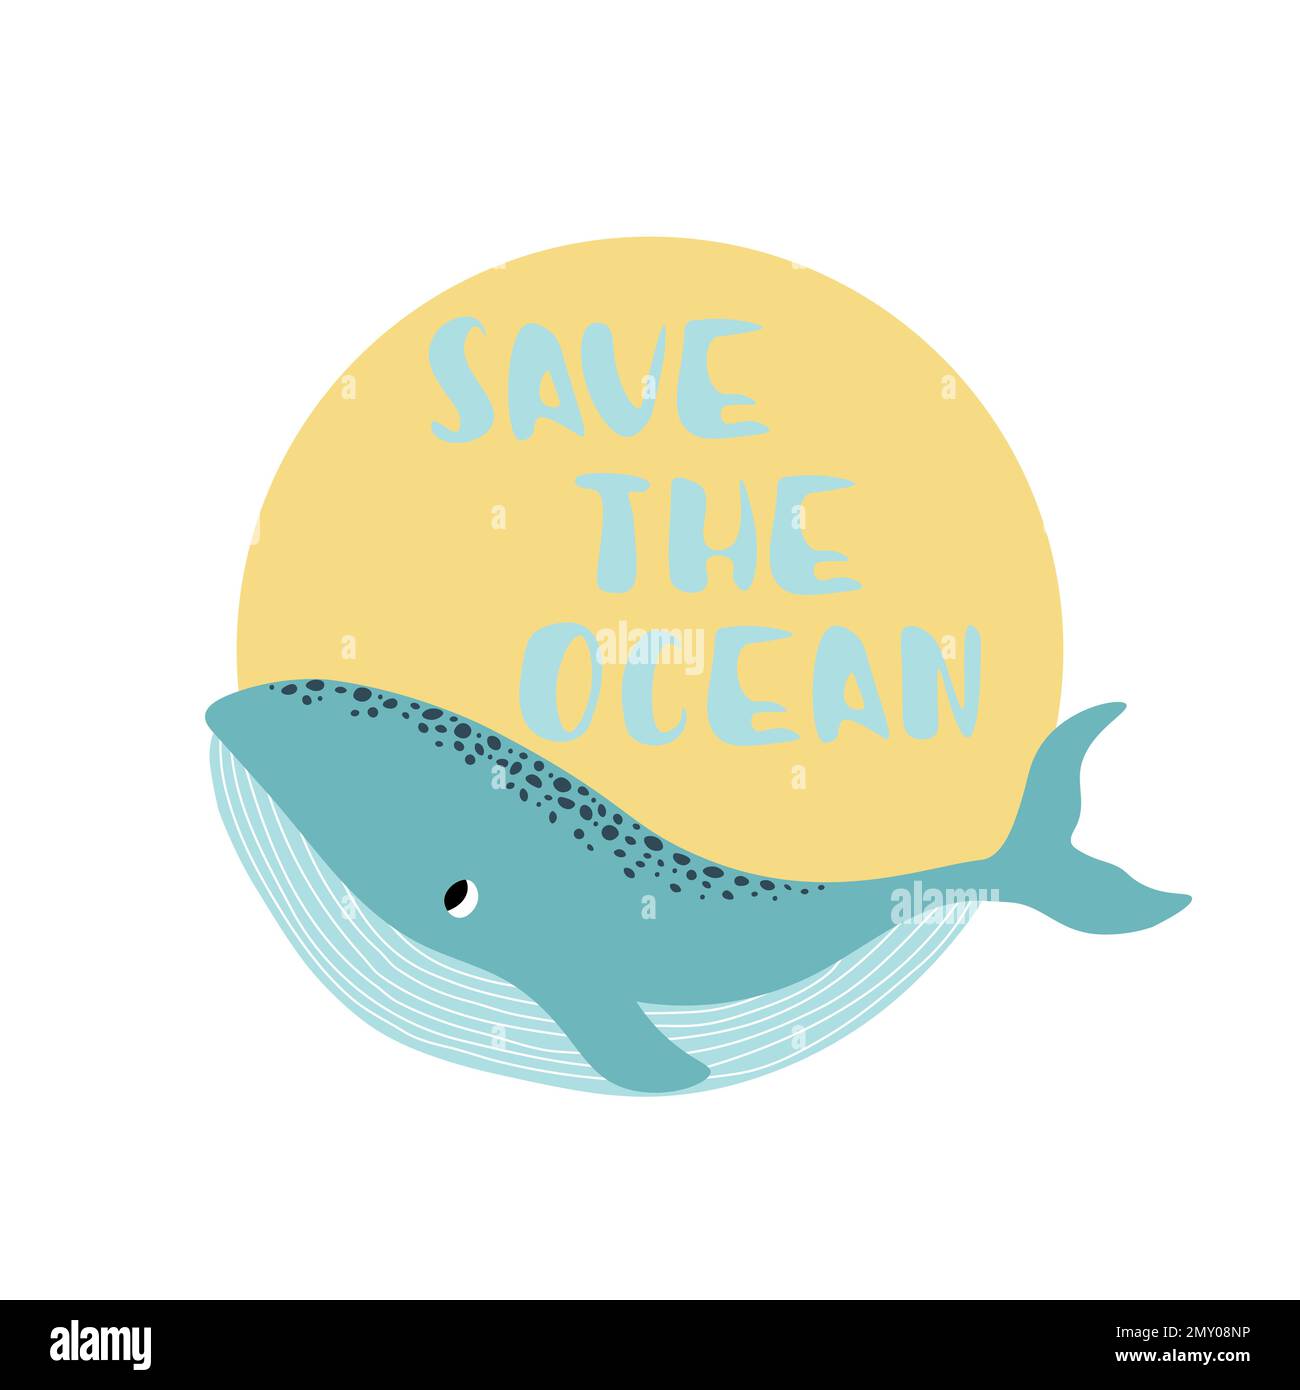 Vektor Ozean Illustration mit Wal. Save the Ocean - Moderne Beschriftung. Unterwassertiere. Ökologisches Design für Banner, Flyer, Postkarte, Website Stock Vektor